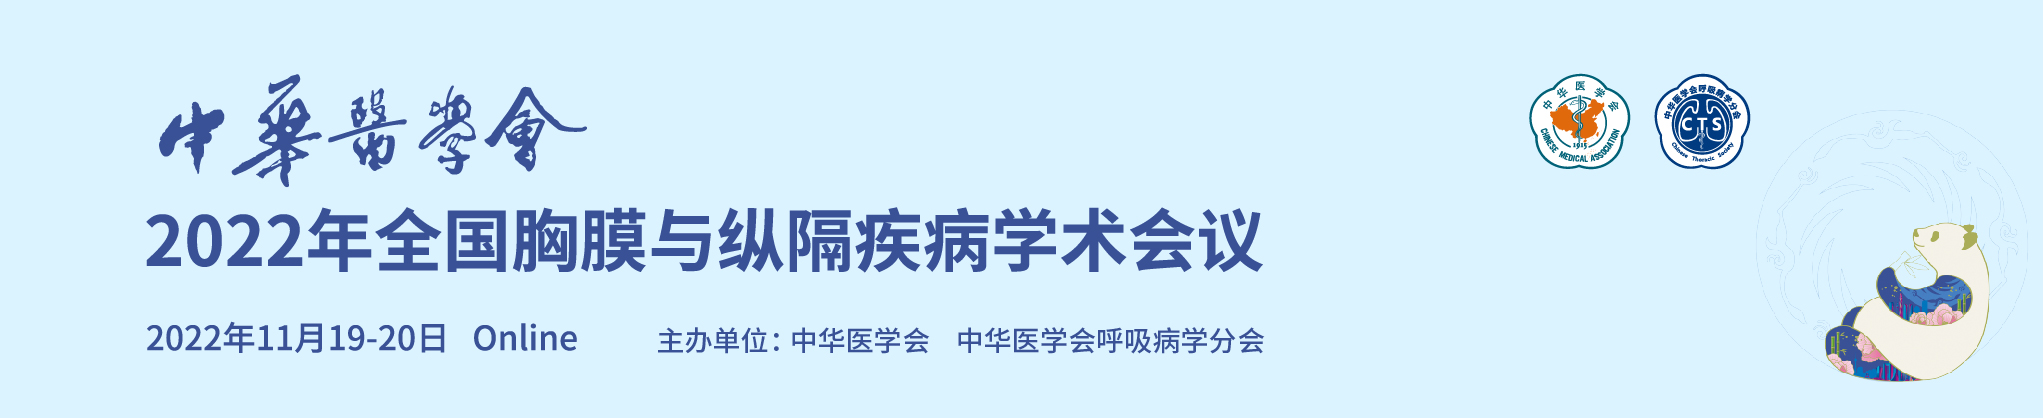 中华医学会2022年全国胸膜与纵隔疾病学术会议